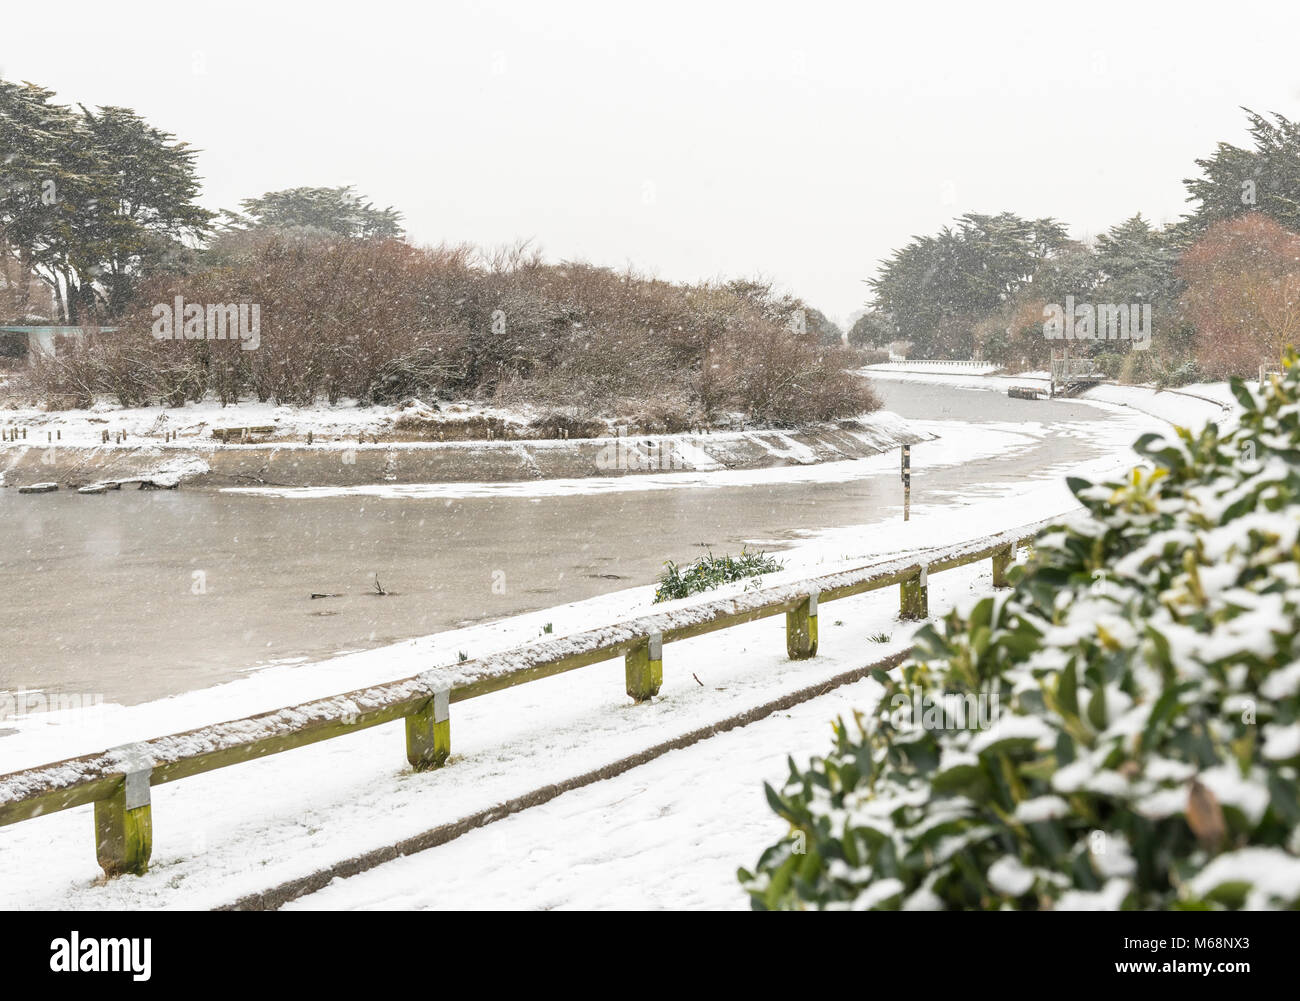 La neige et la glace sur un lac gelé en hiver en Mewsbrook Park, Littlehampton, West Sussex, Angleterre, Royaume-Uni. Banque D'Images